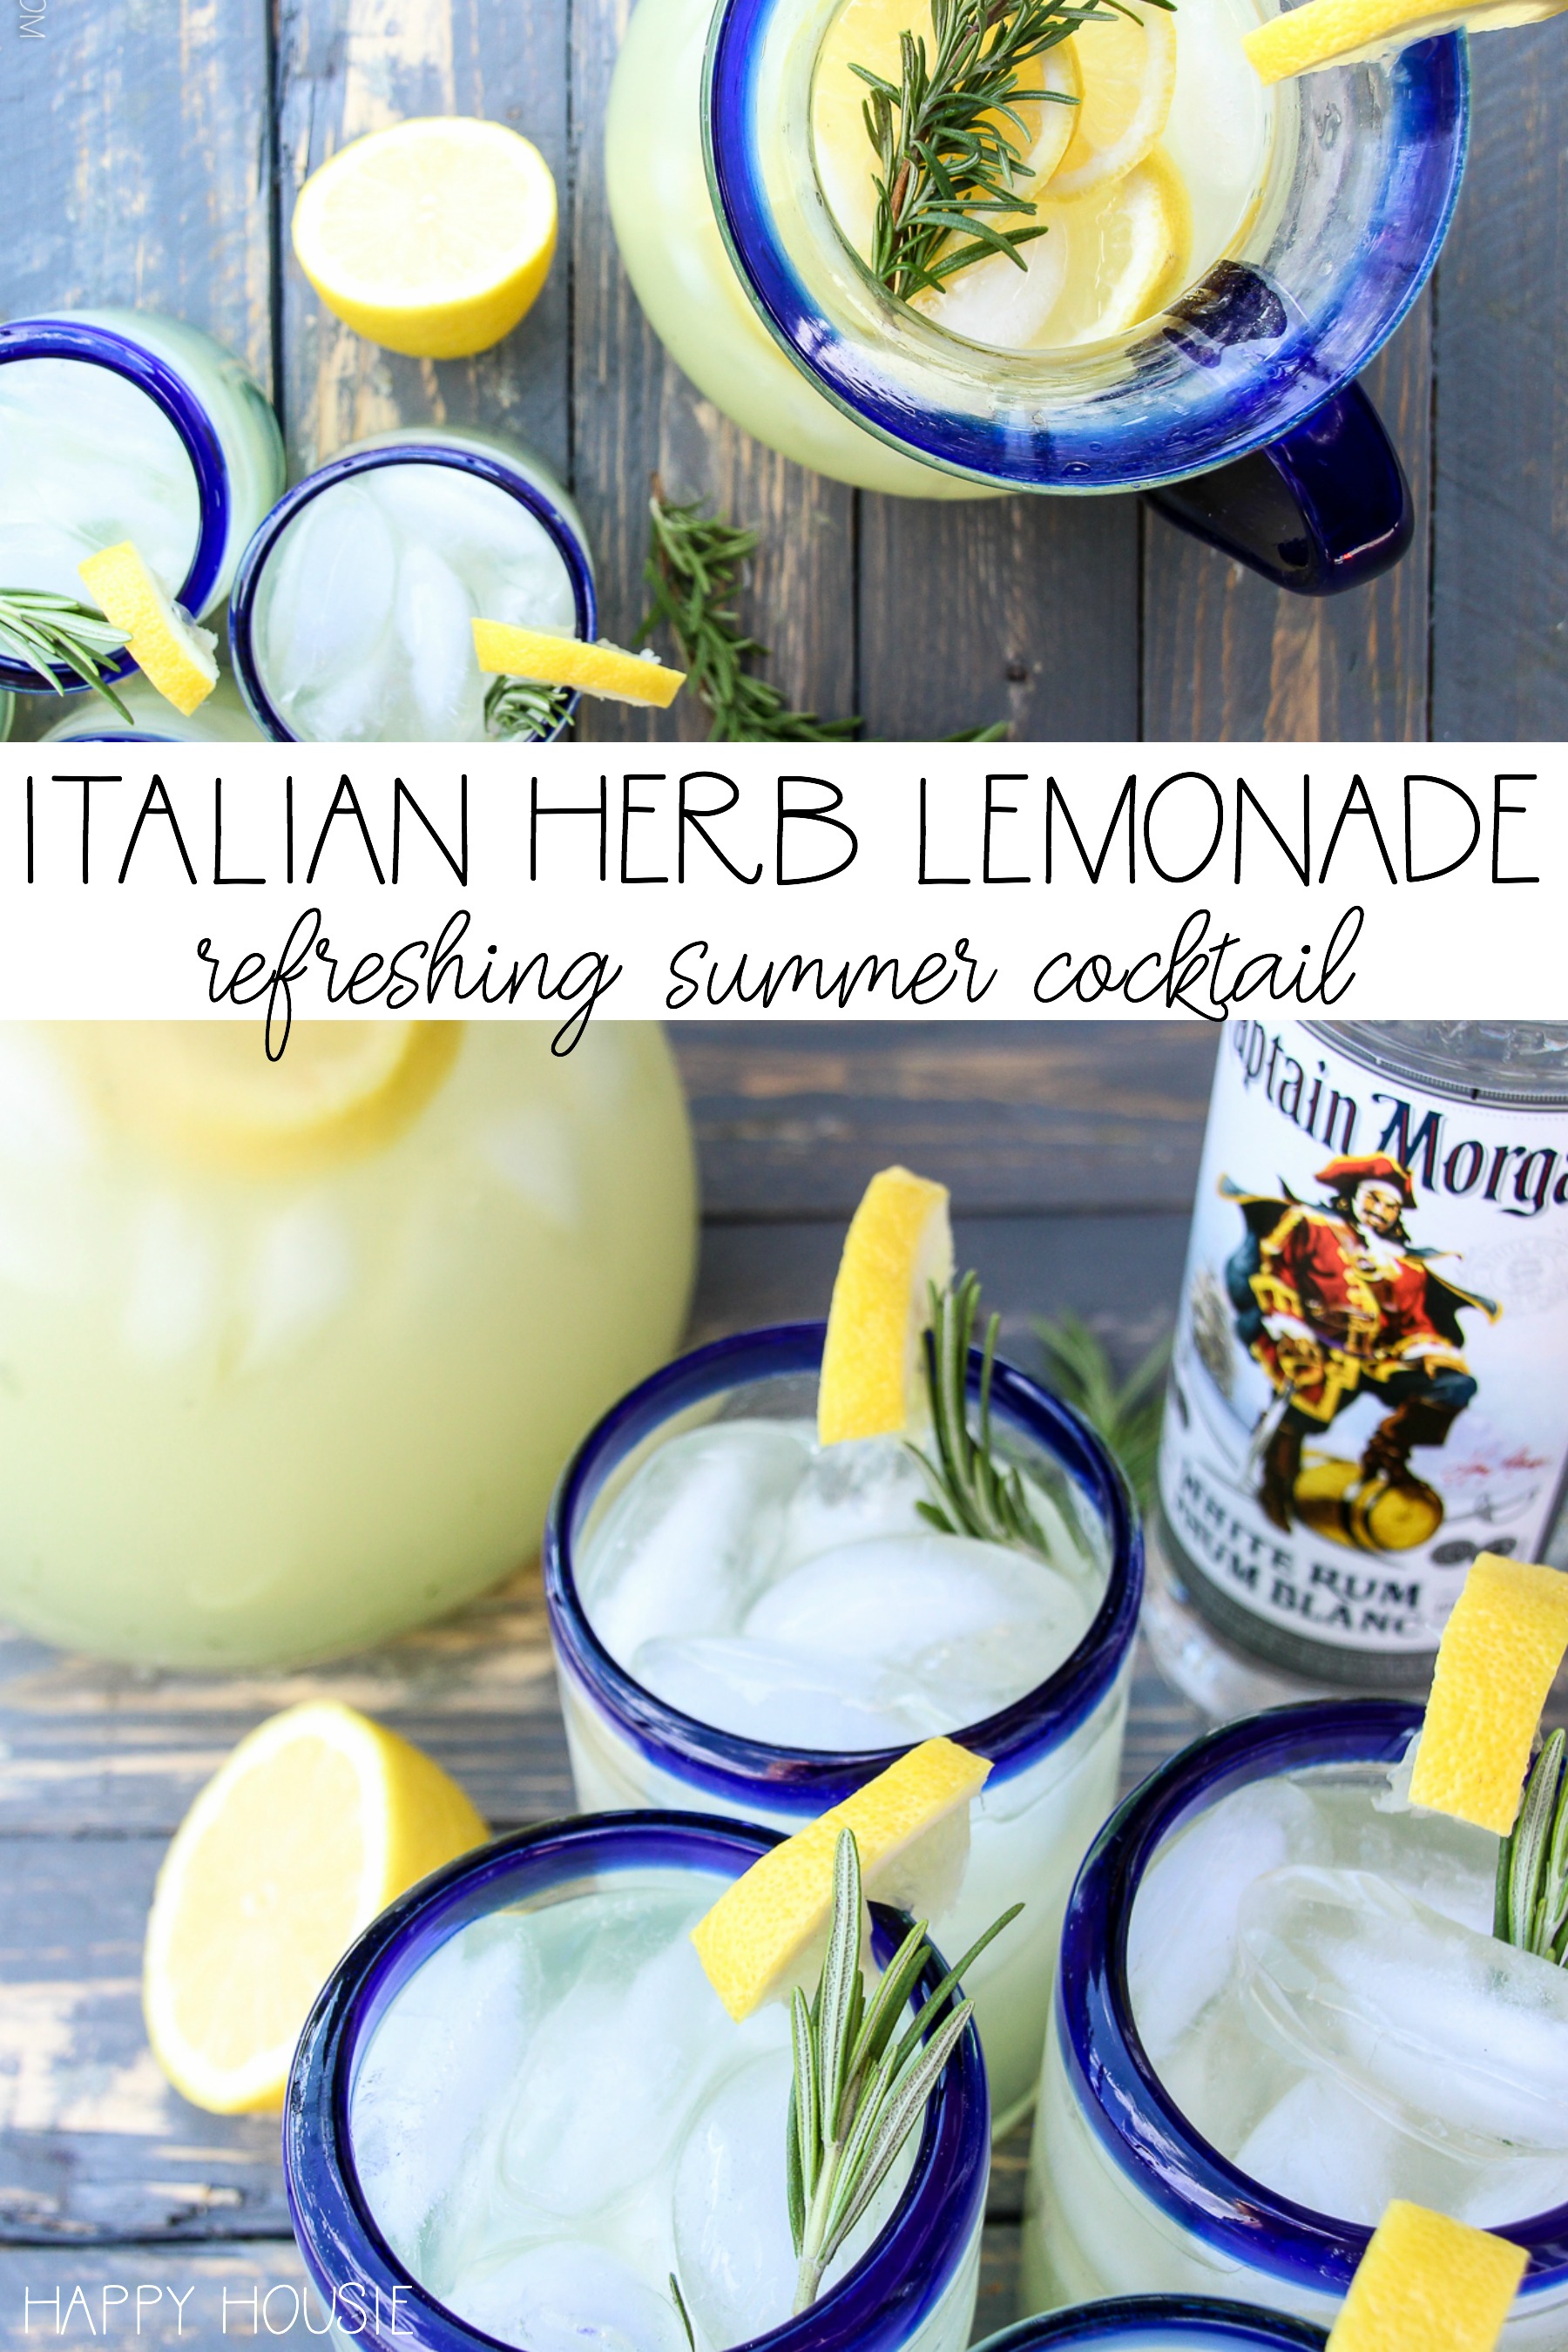 Italian Herb Lemonade poster.